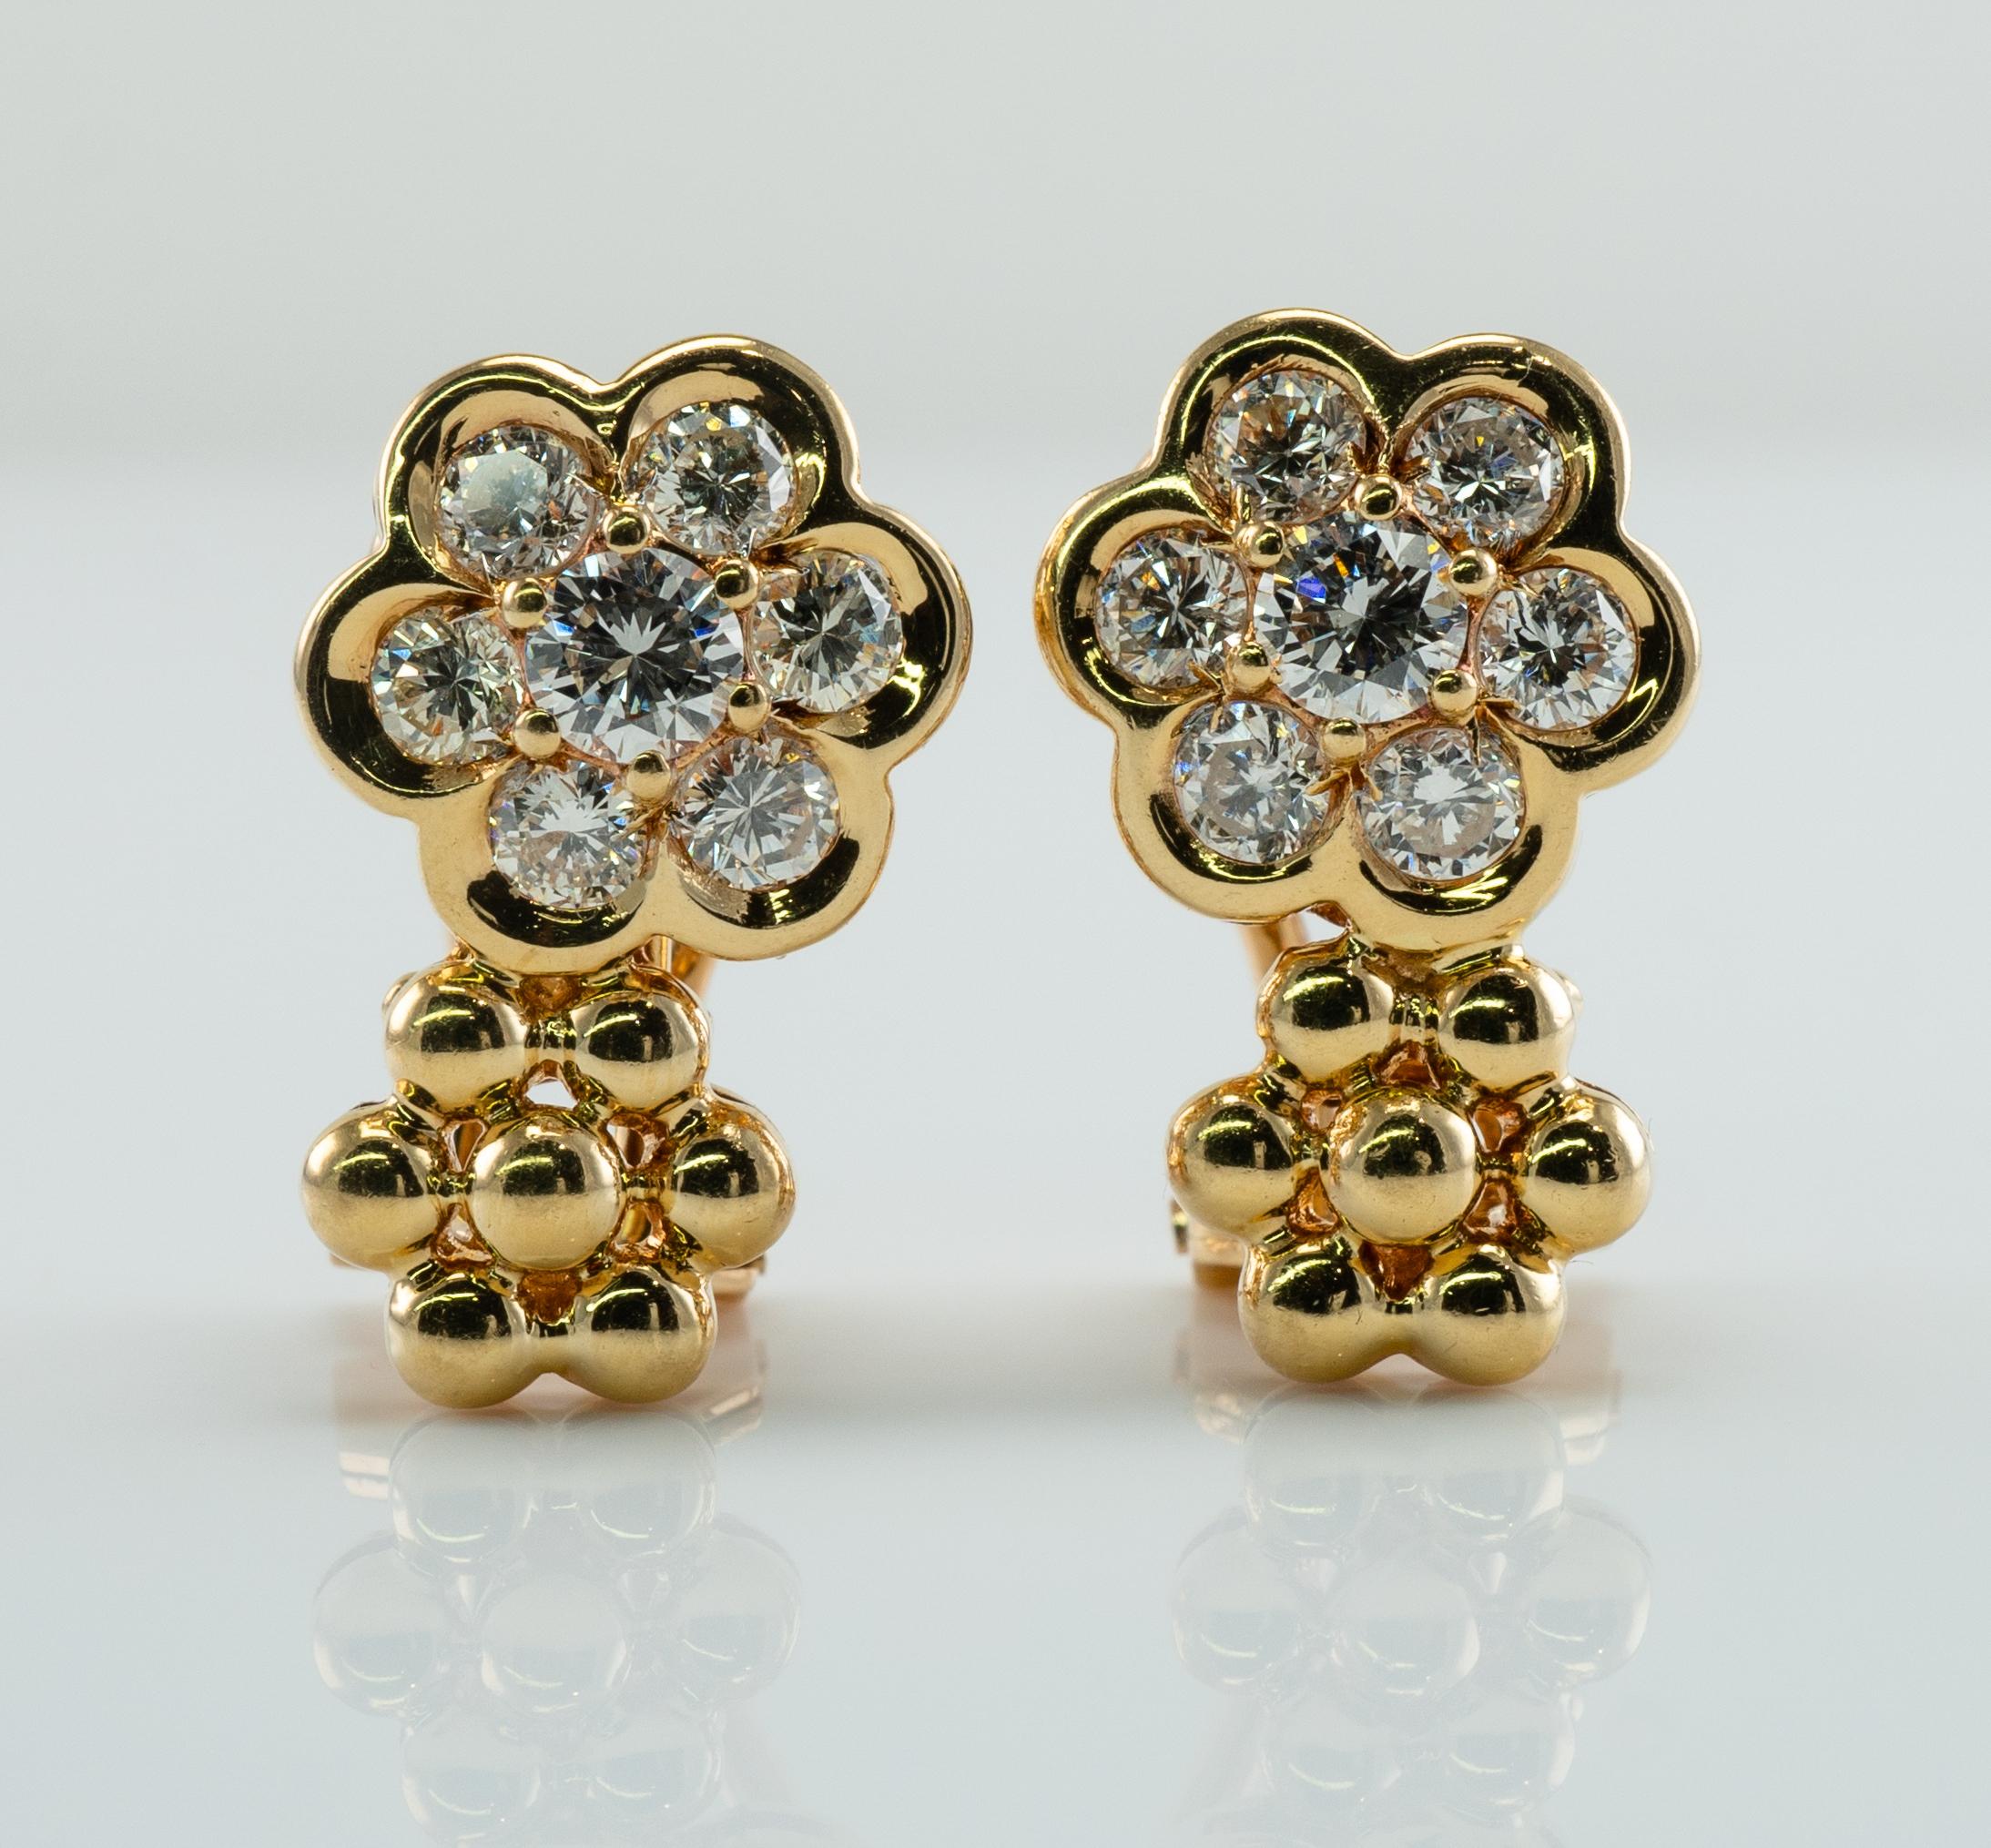 Cluster-Diamant-Blumen-Ohrringe 18K Gold 1,32 TDW Umwandelbare durchbrochene und Clips

Diese wunderschönen Ohrringe sind aus massivem 18-karätigem Gelbgold gefertigt.
Jeder Ohrring ist mit 7 echten Diamanten der Reinheit VVS2 und der Farbe G